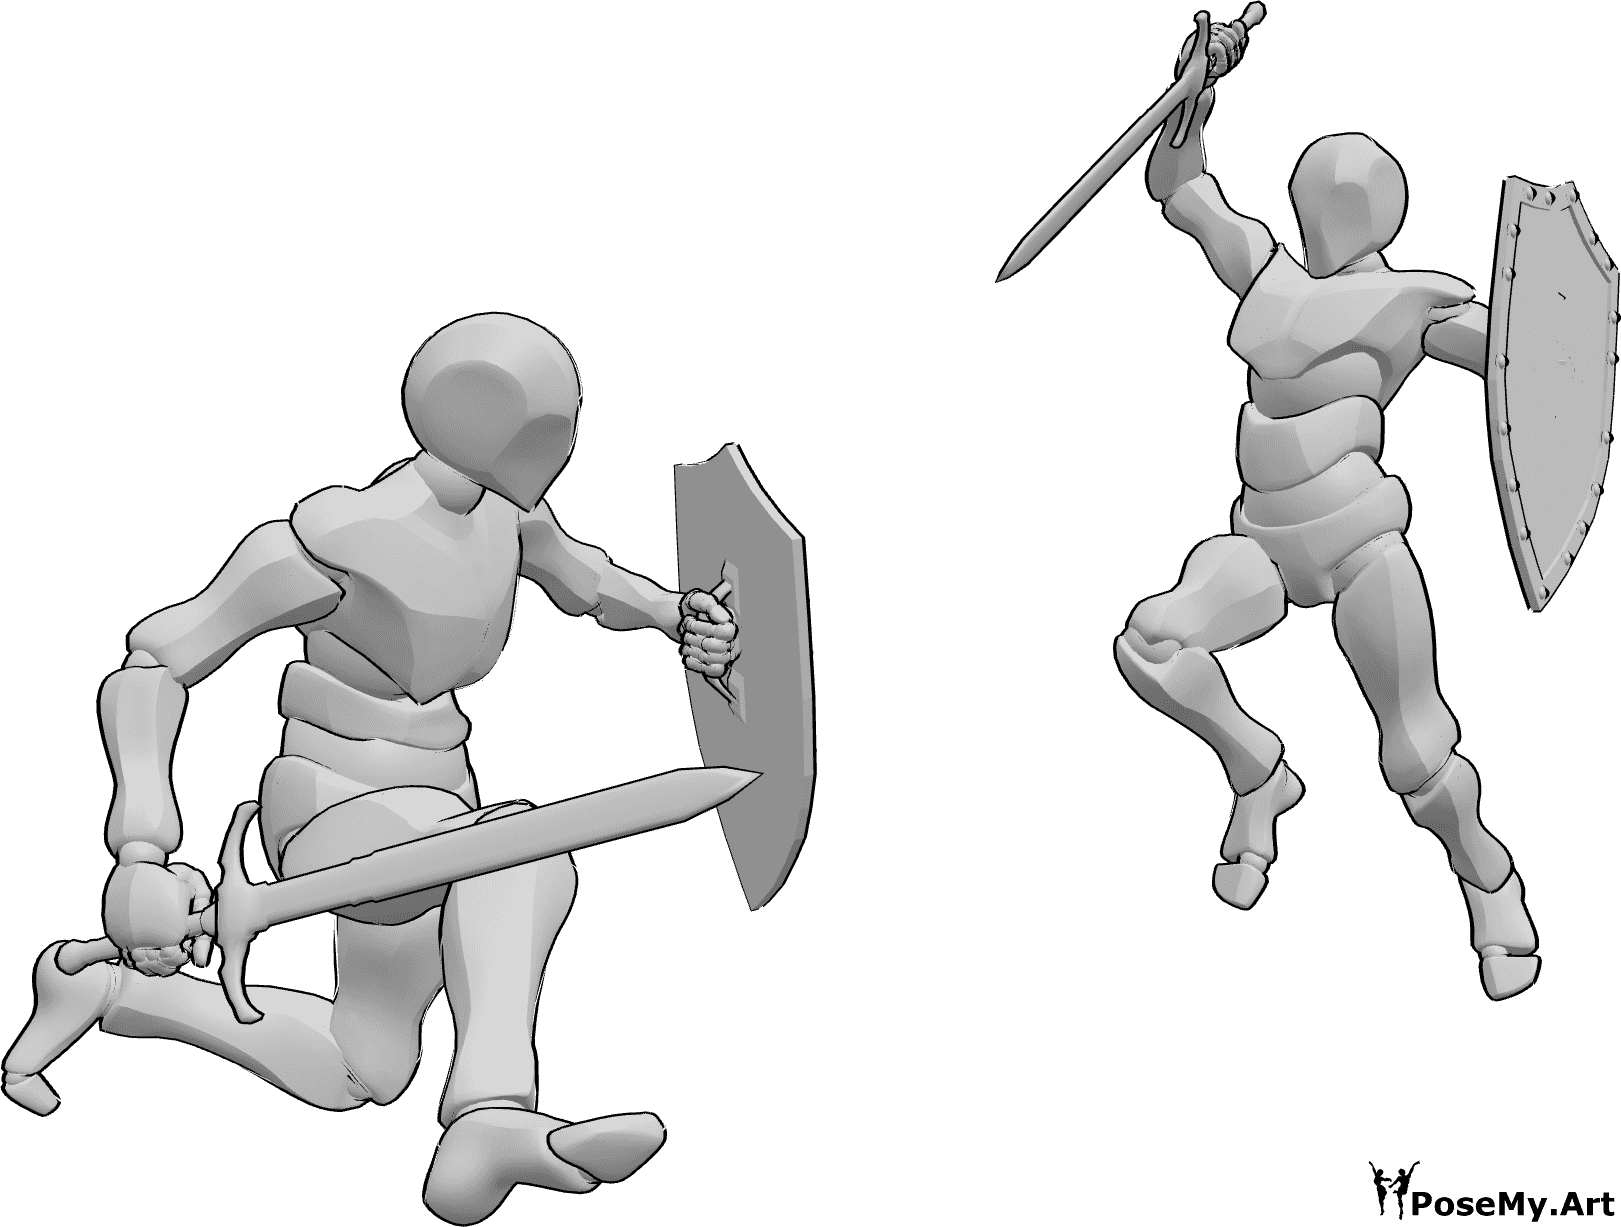 Referencia de poses- Postura de lucha con escudo y espada - Dos machos están luchando, sosteniendo espadas y escudos, atacando pose